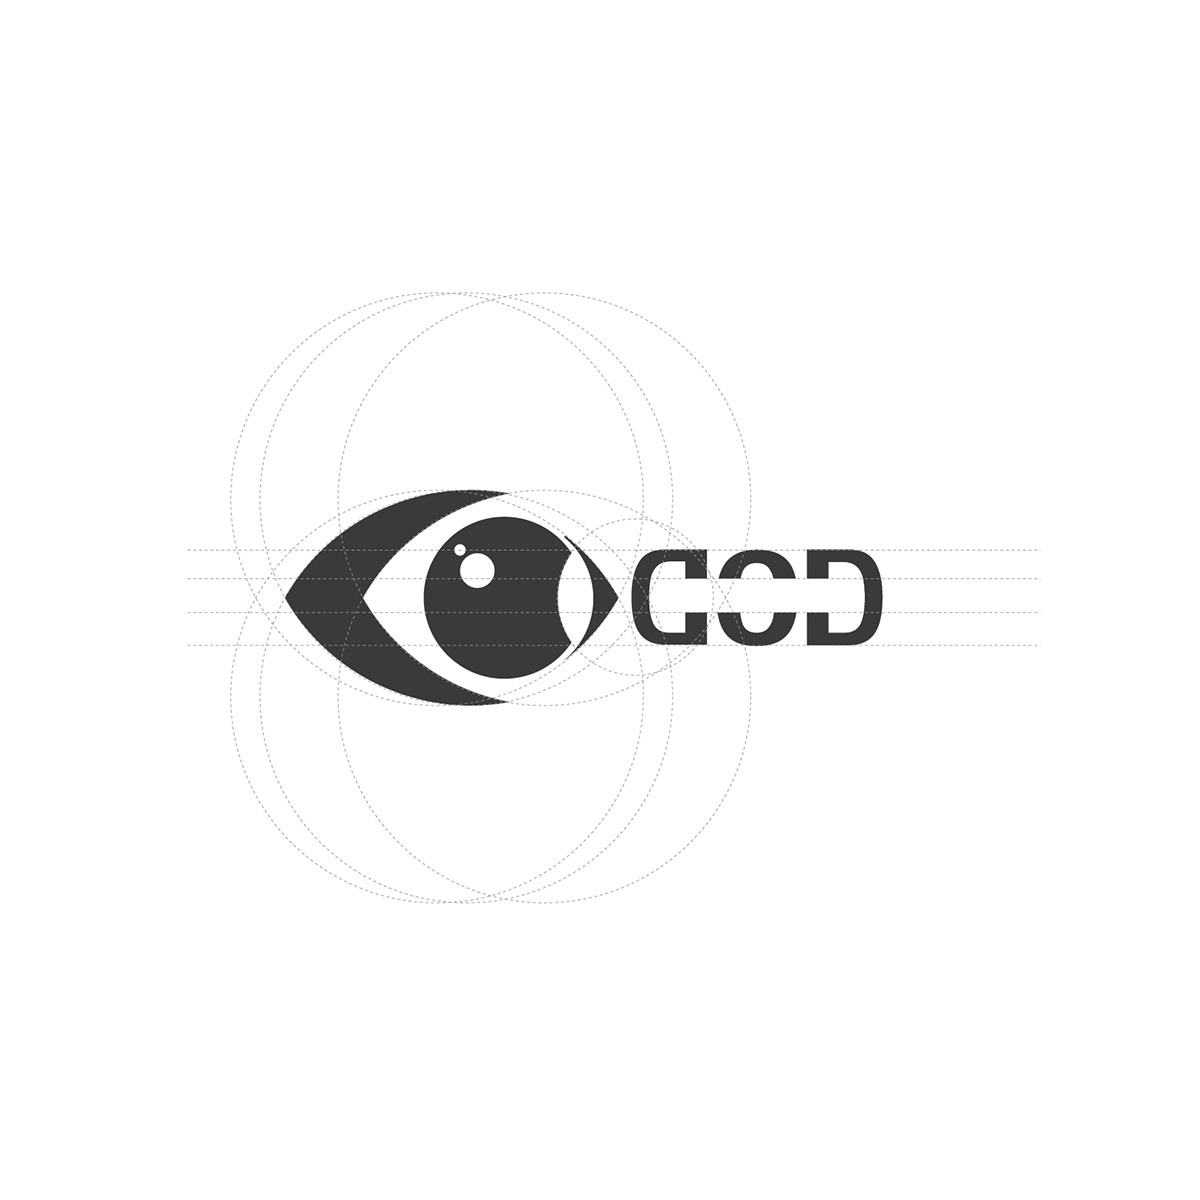 Cod abudhabi subair graphic corporate branding logo